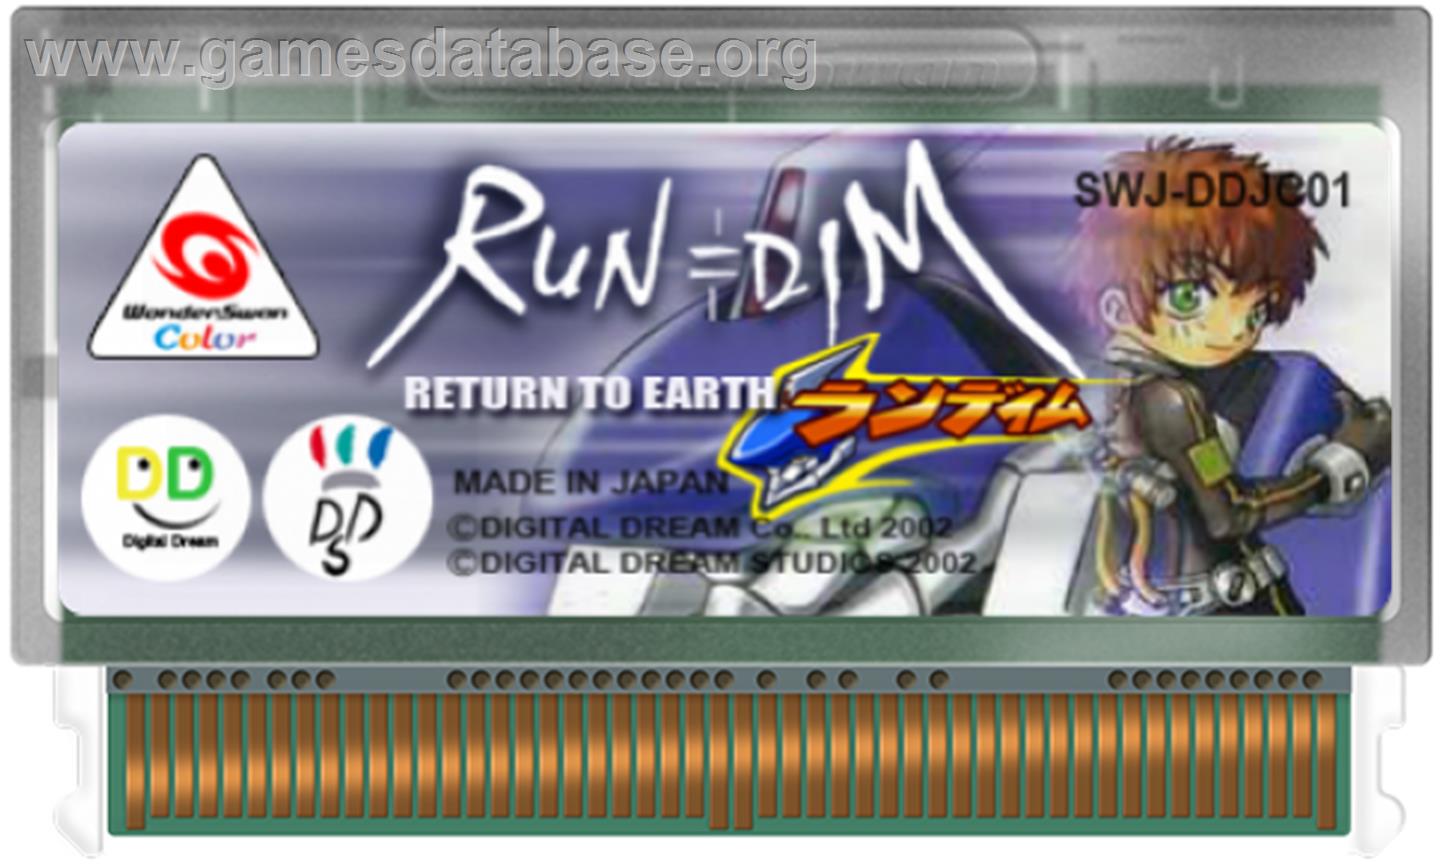 RUN=DIM Return to Earth - Bandai WonderSwan Color - Artwork - Cartridge